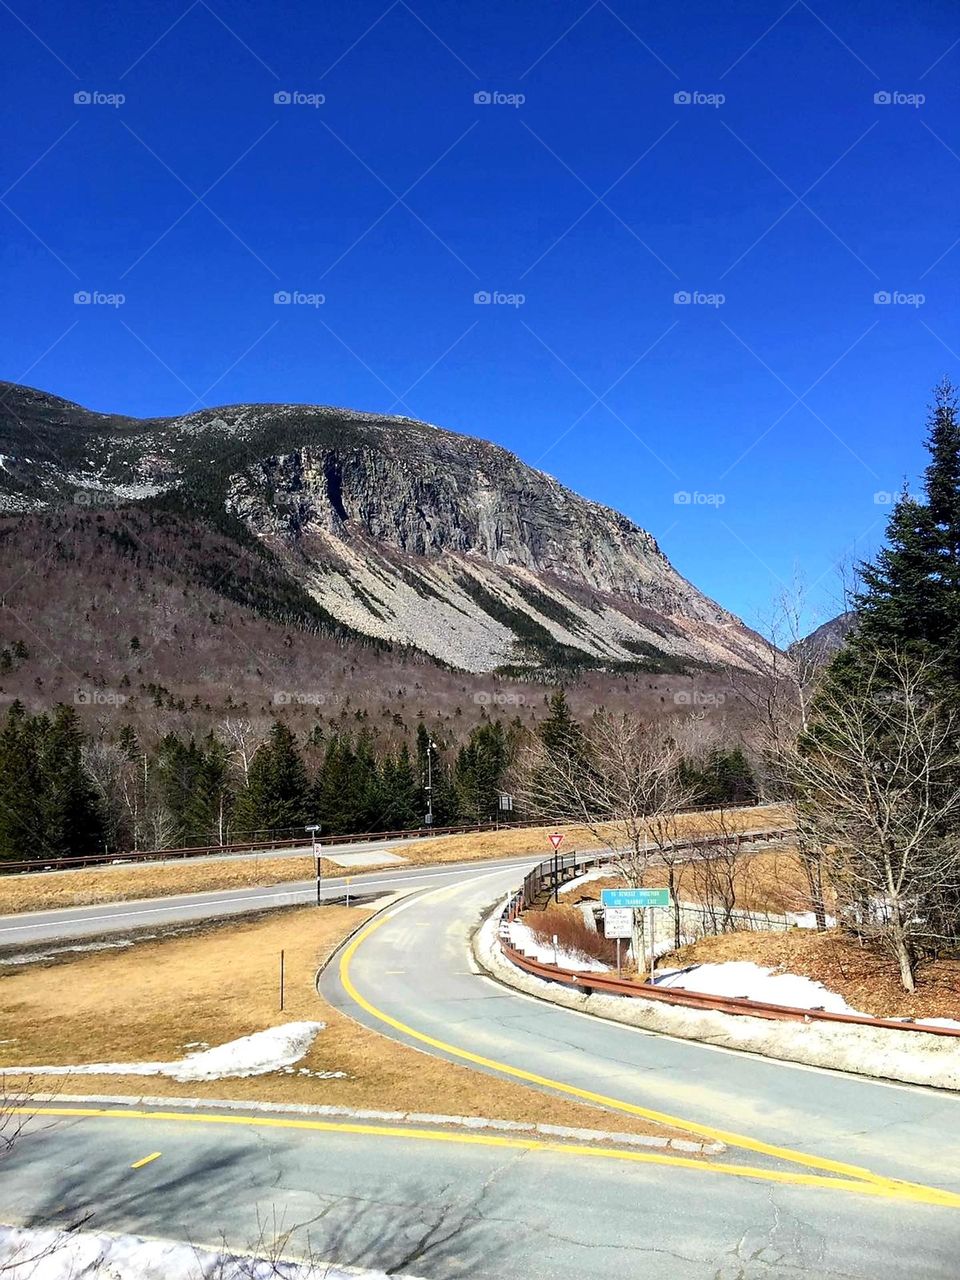 Boston, Massachusetts, EUA!! 
Viagem de carro pelas lindas montanhas de Massachusetts, do Maine e de New Hampshire.
As vezes uma imagem diz mais que mil palavras, é o caso da foto em questão.😉